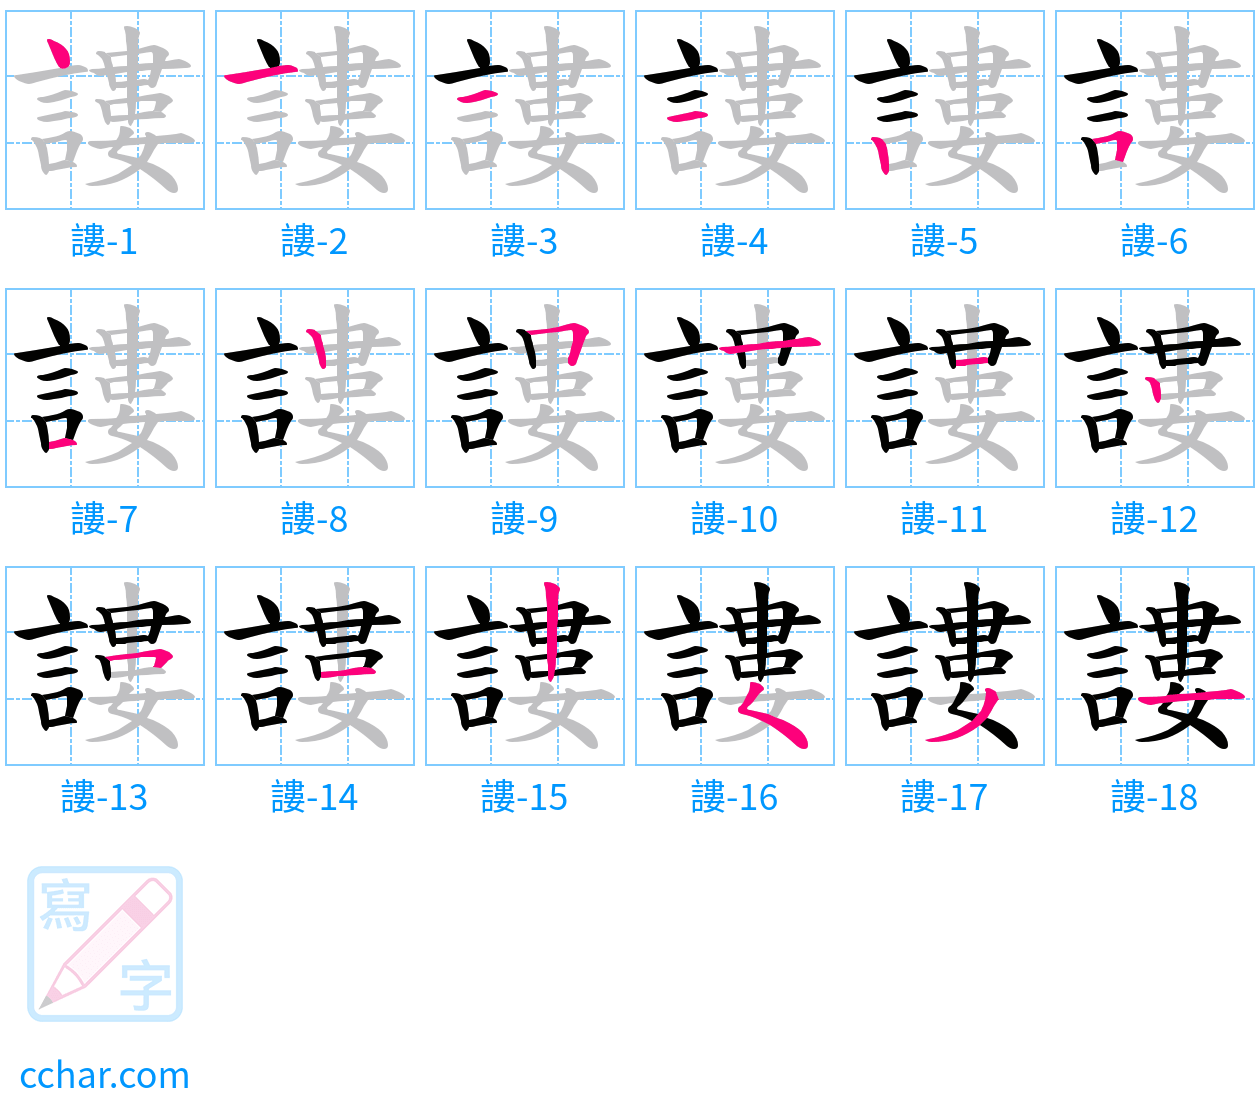 謱 stroke order step-by-step diagram